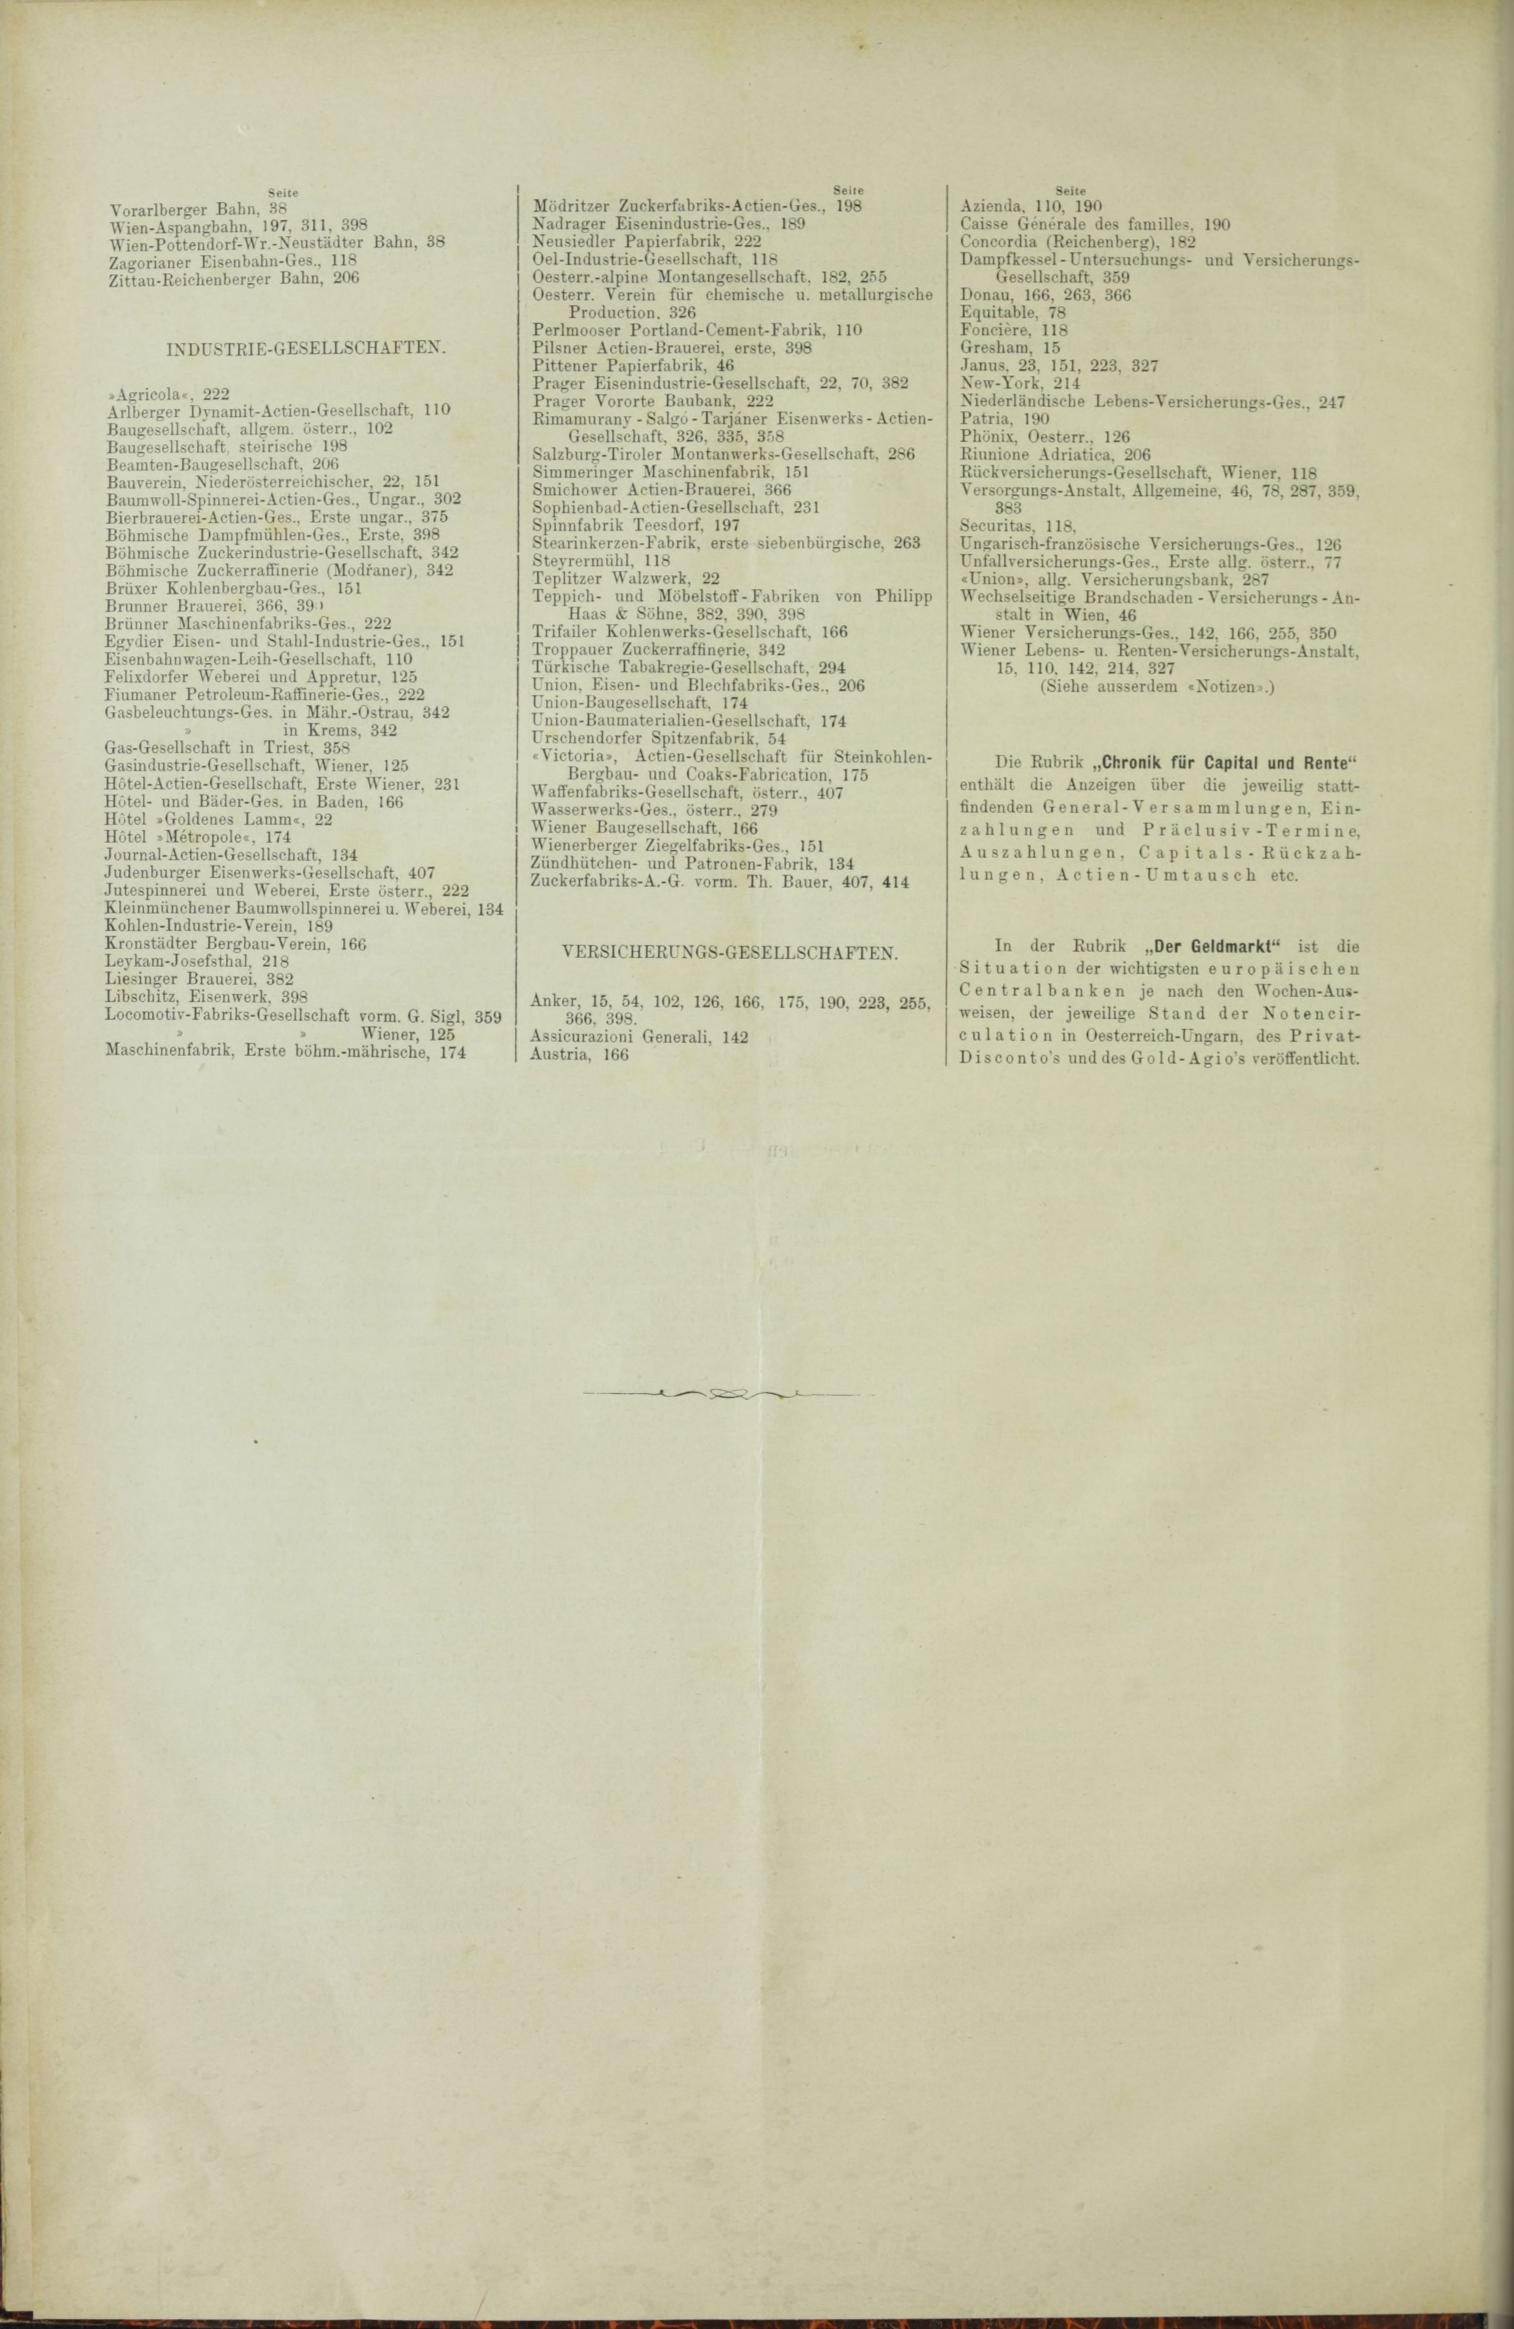 Der Tresor 30.09.1886 - Seite 12